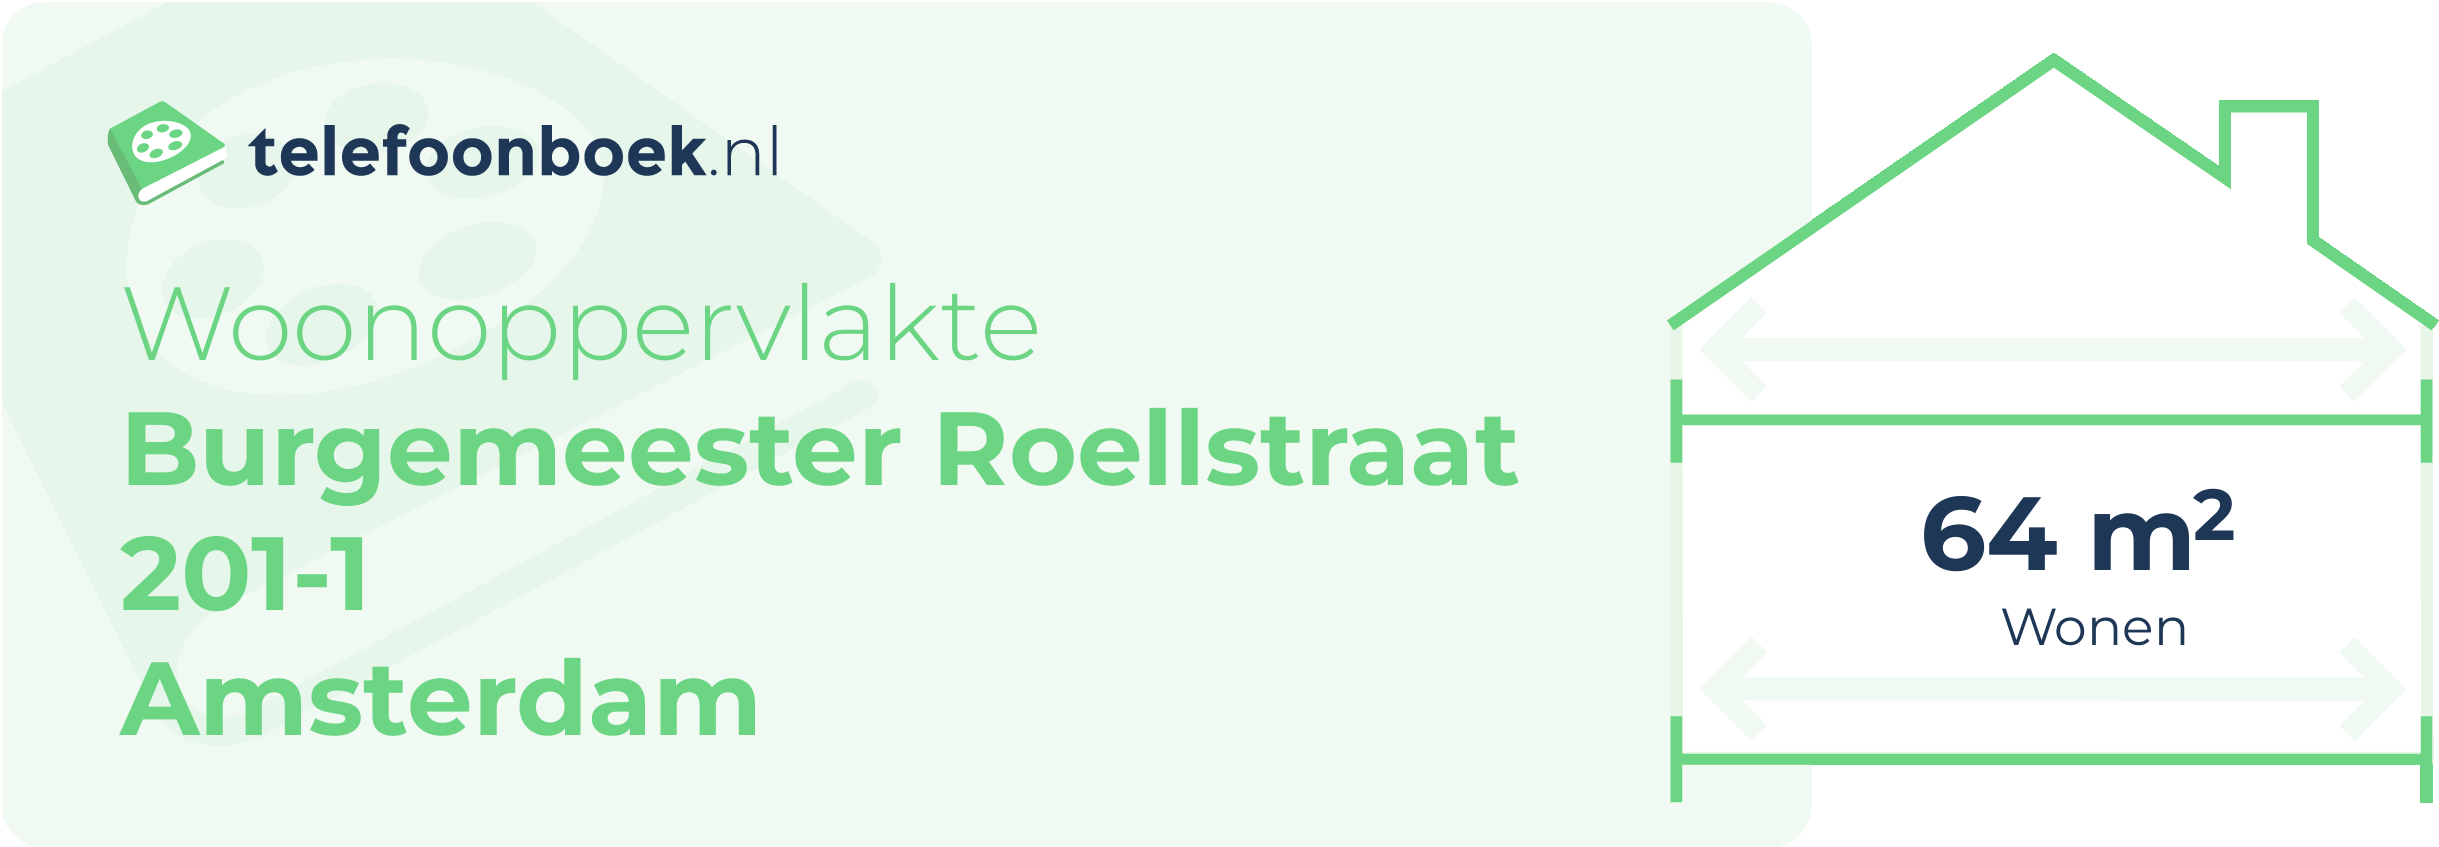 Woonoppervlakte Burgemeester Roellstraat 201-1 Amsterdam